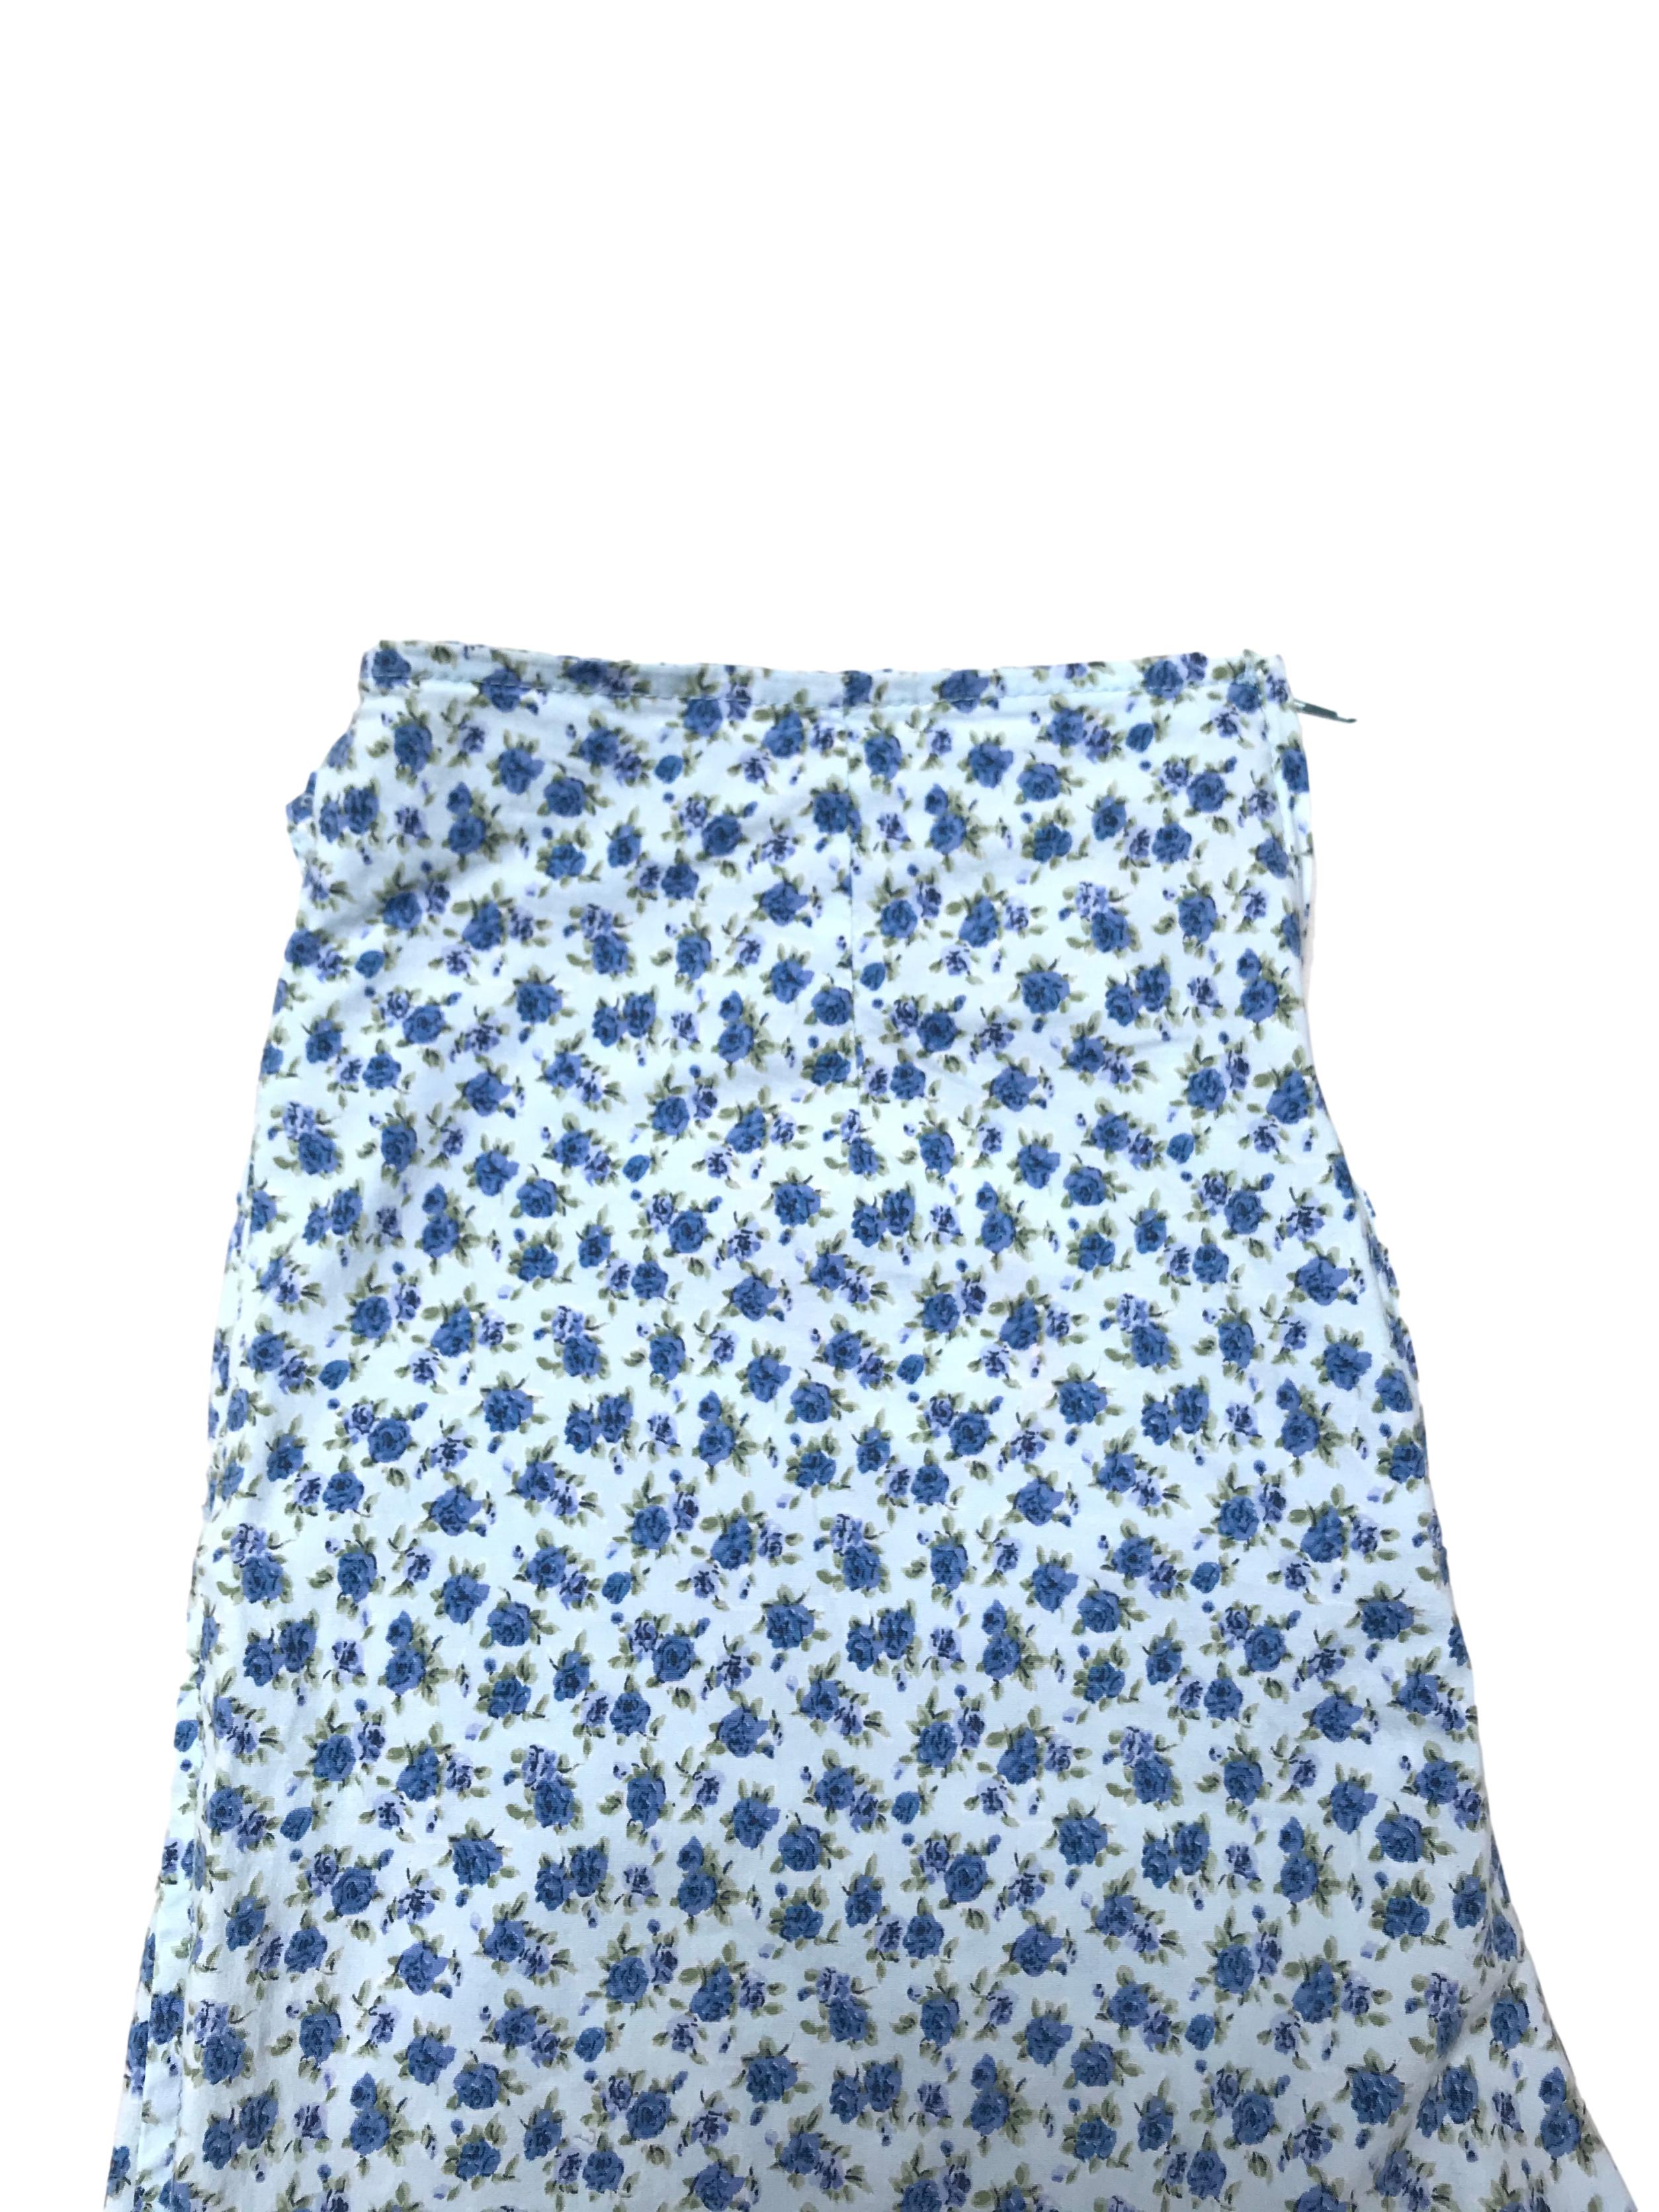 Falda short celeste con pinrt de florcitas azules, cierre posterior y con tiras para amarrar. Cintura 70cm Largo 32cm